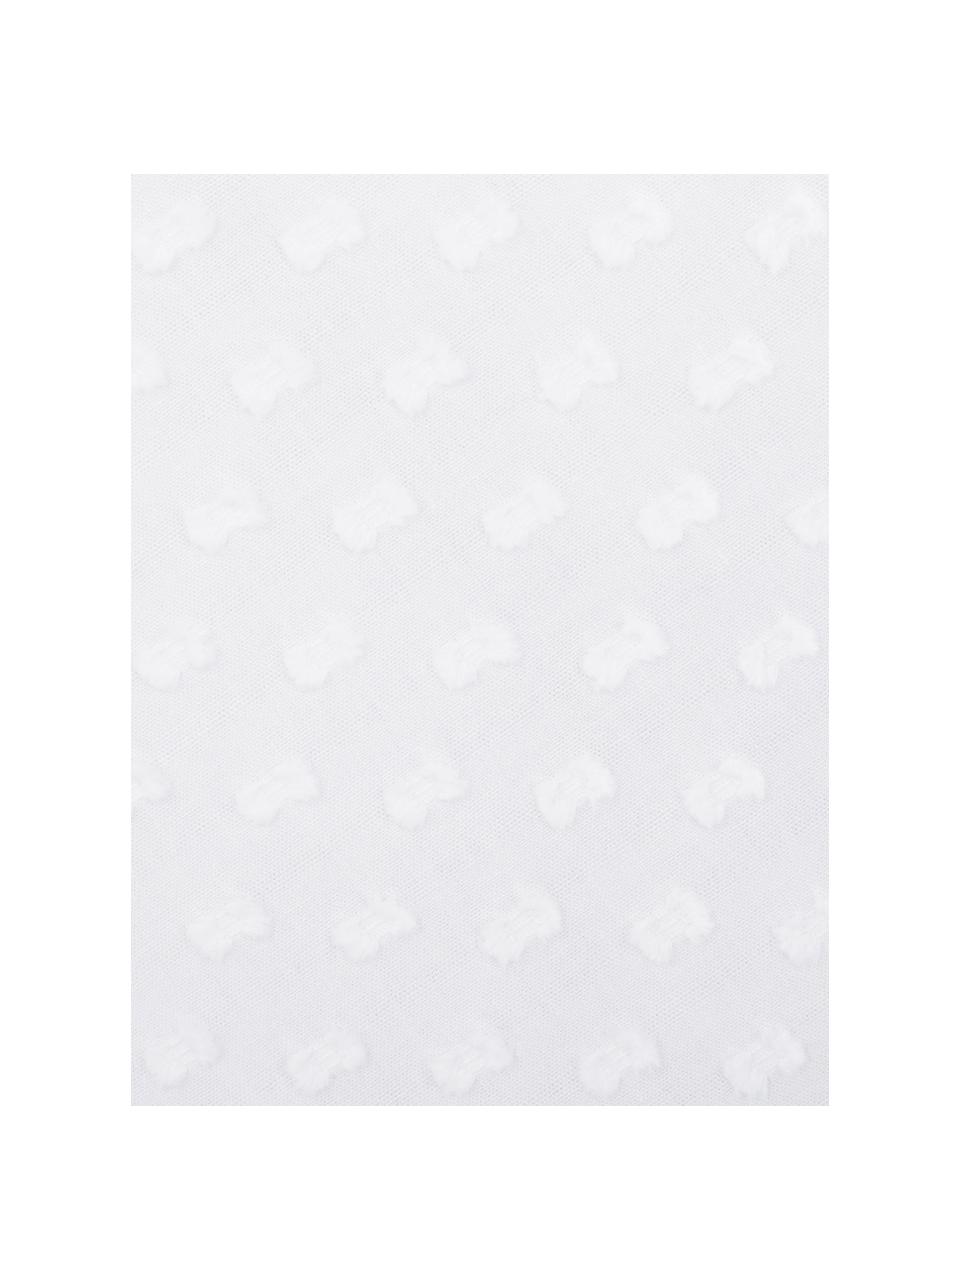 Dubbelzijdig perkal dekbedovertrek Adelaide, Bovenzijde: katoen, Weeftechniek: perkal (seersucker), Onderzijde: katoen, Weeftechniek: perkal, glad, Wit, 140 x 220 cm